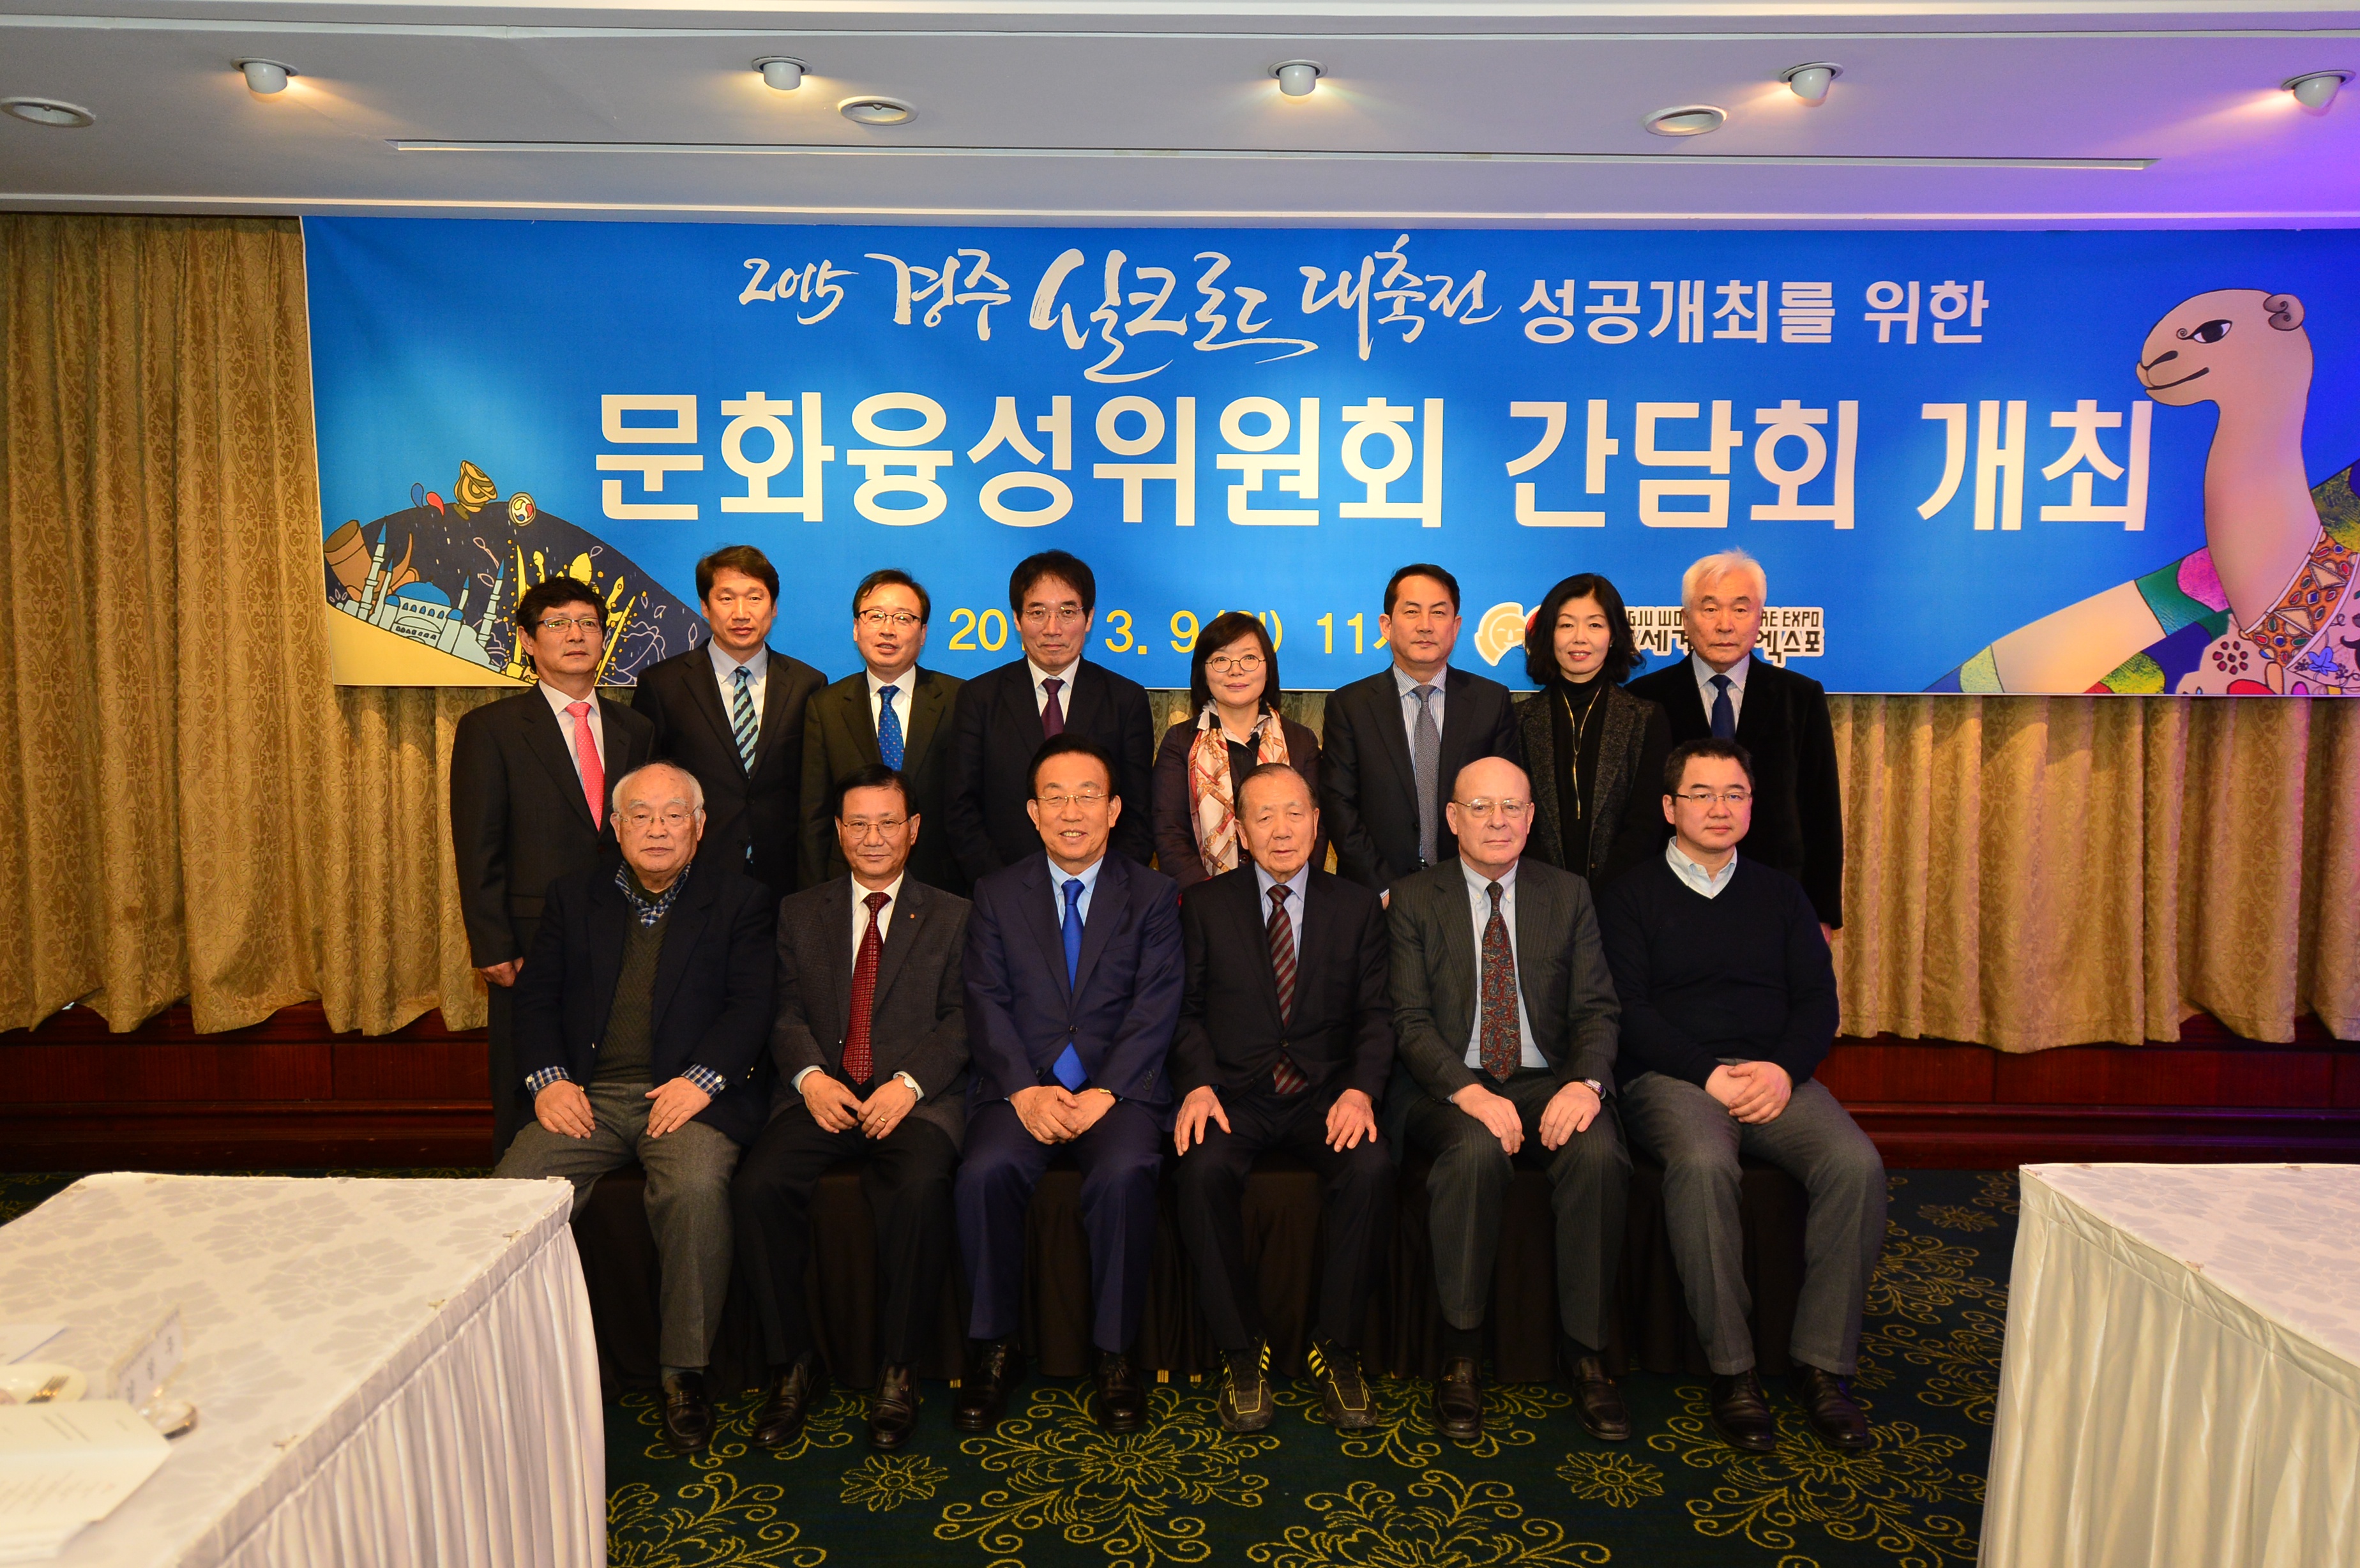 20150309 경주실크로드대축전 성공개최를 위한 문화융성위원회 간담회